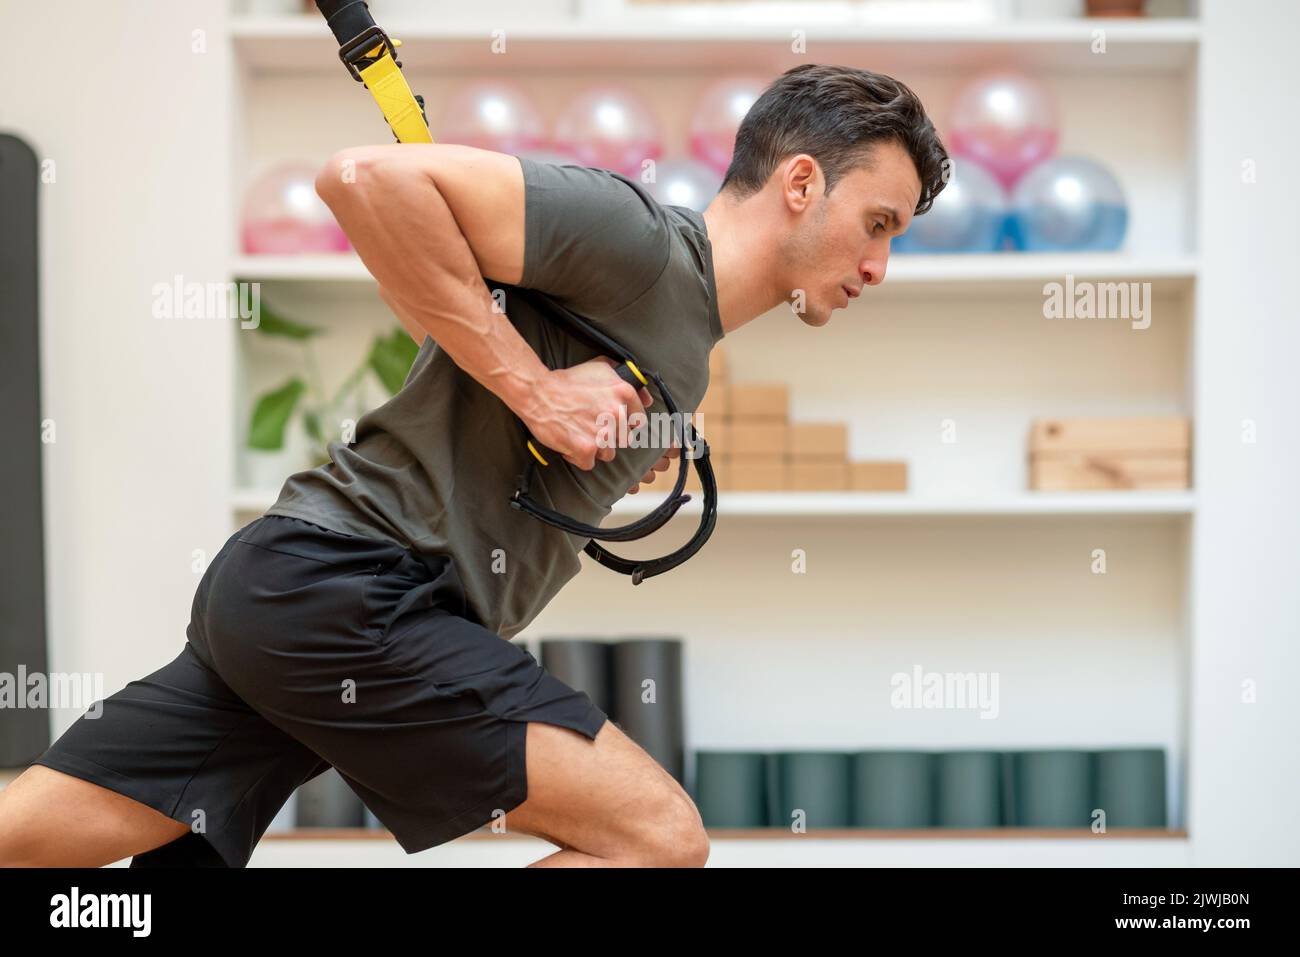 Vista laterale dell'uomo in forma concentrata che si esercita sui cinturini TRX sospesi mentre si allena nel moderno e spazioso centro fitness Foto Stock